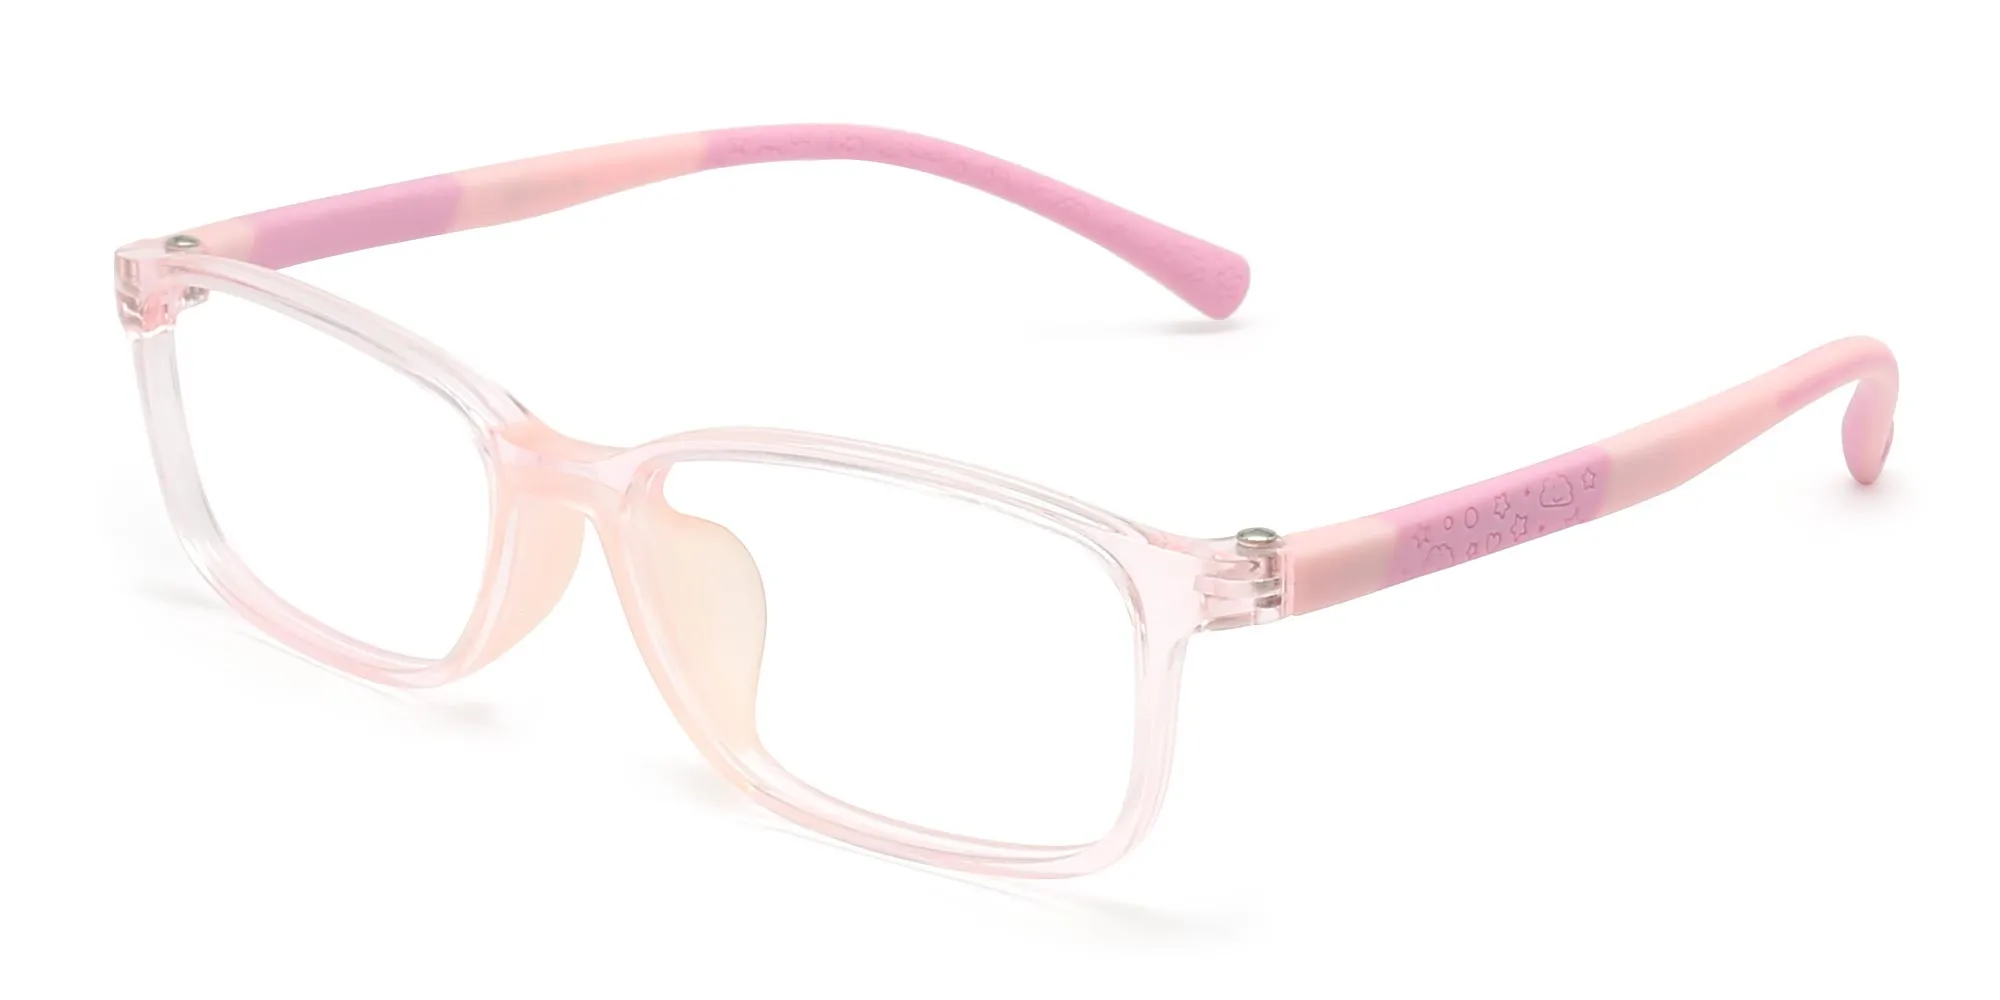 children's lenses glasses